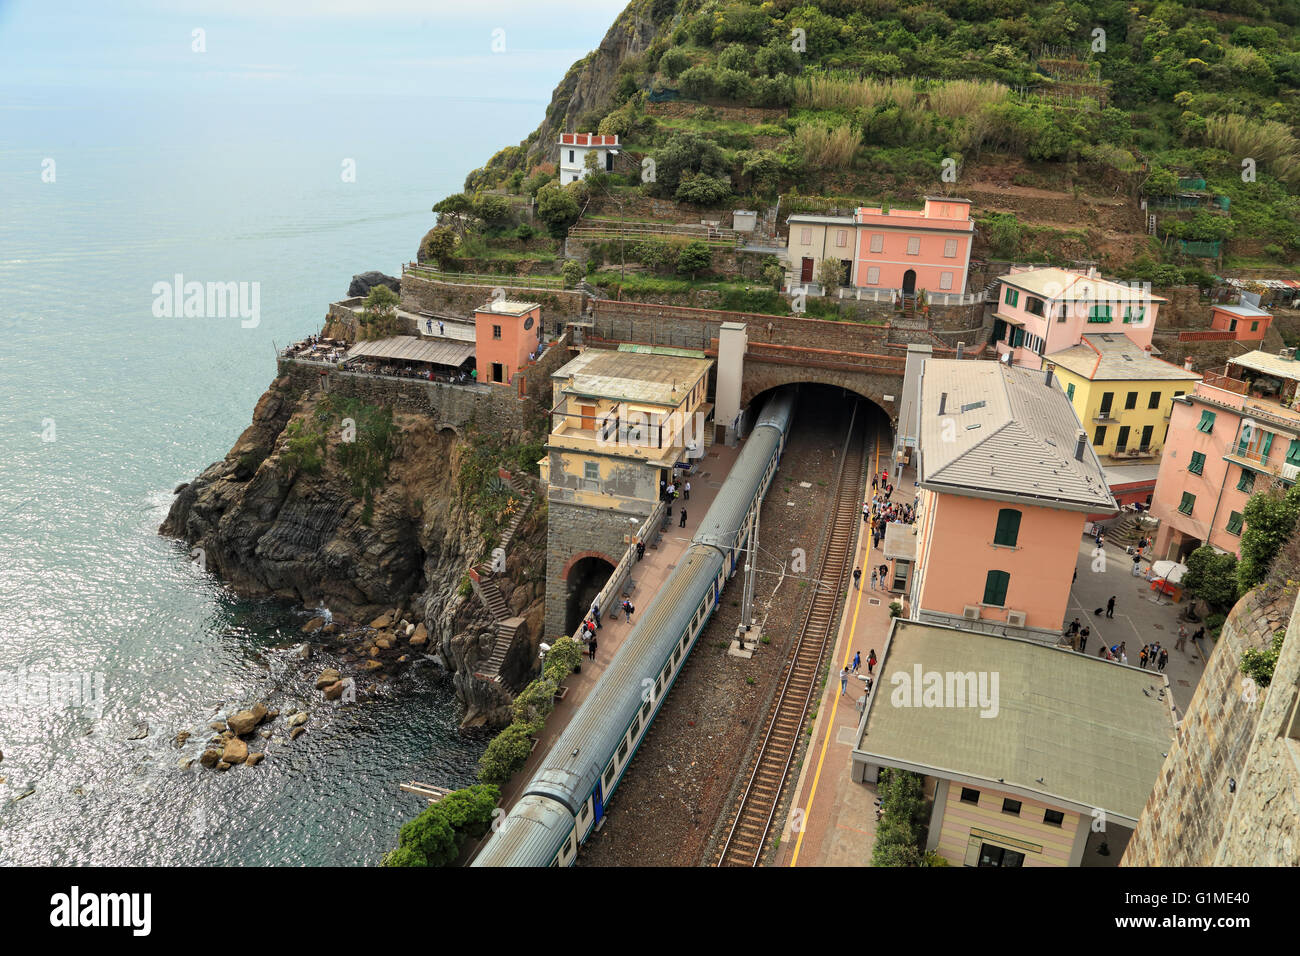 Tunnel train station of Riomaggiore, Cinque Terre Stock Photo